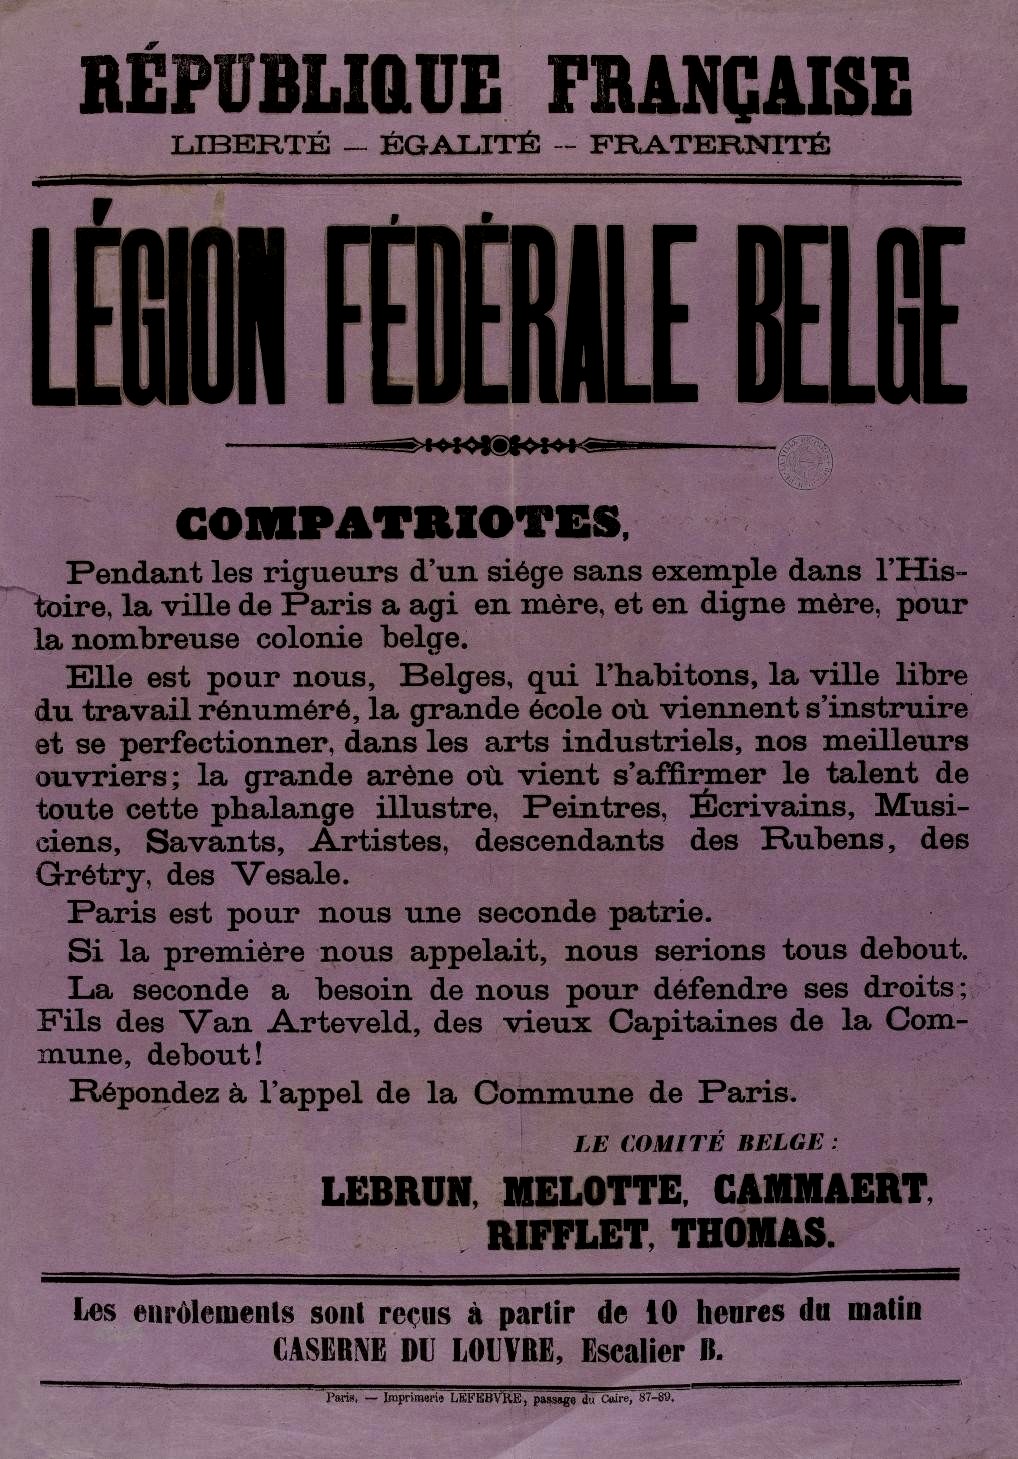 Affiche de la Commune de Paris avril 1871 - Appel du comité de la Légion Fédérale Belge (Source : argonnaute.parisnanterre.fr)